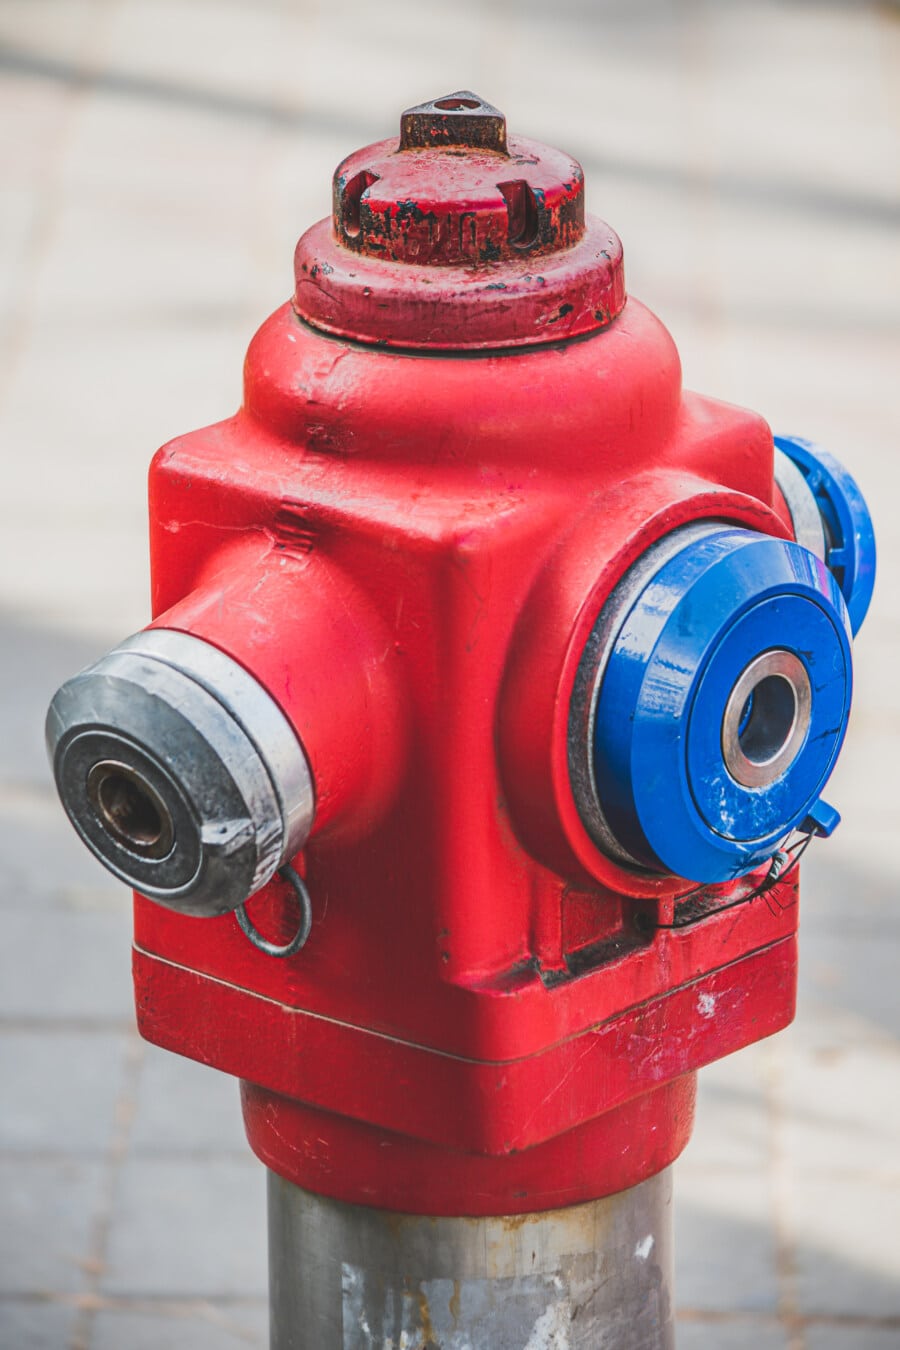 tamno crvena, hidrant, objekat, sigurnost, industrijsko, pritisak, lijevano željezo, čelik, industrija, oprema